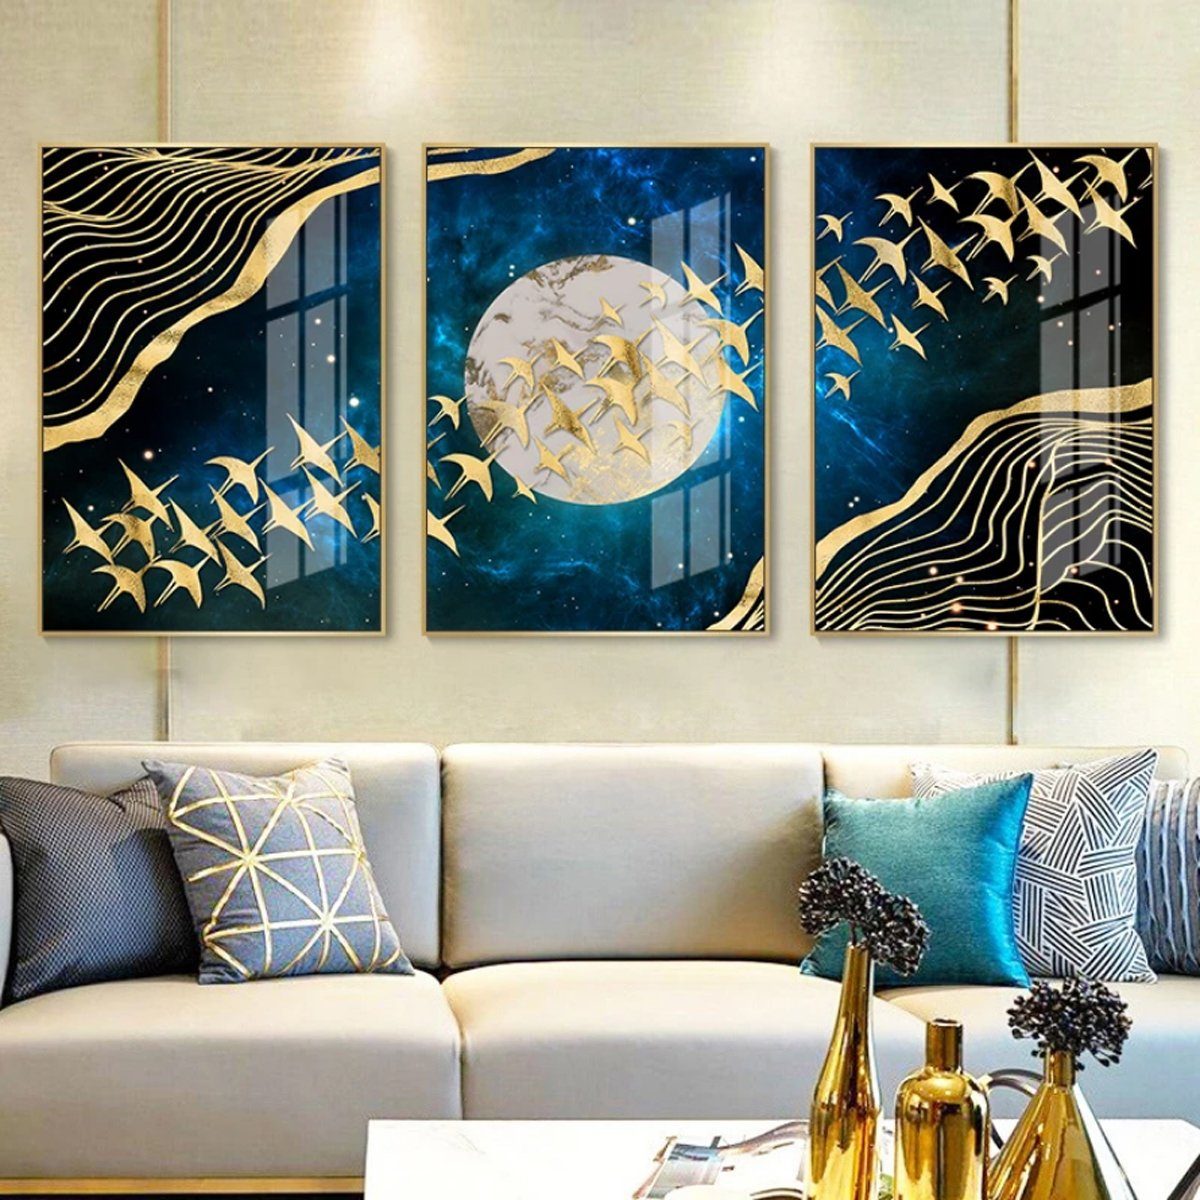 TPFLiving Kunstdruck (OHNE RAHMEN) Poster - Leinwand - Wandbild, Goldene Vögel auf blauem Hintergrund - Wanddeko Wohnzimmer - (7 verschiedene Größen zur Auswahl - Auch im günstigen 3-er Set), Farben: Gold, Blau - Größe: 40x60cm